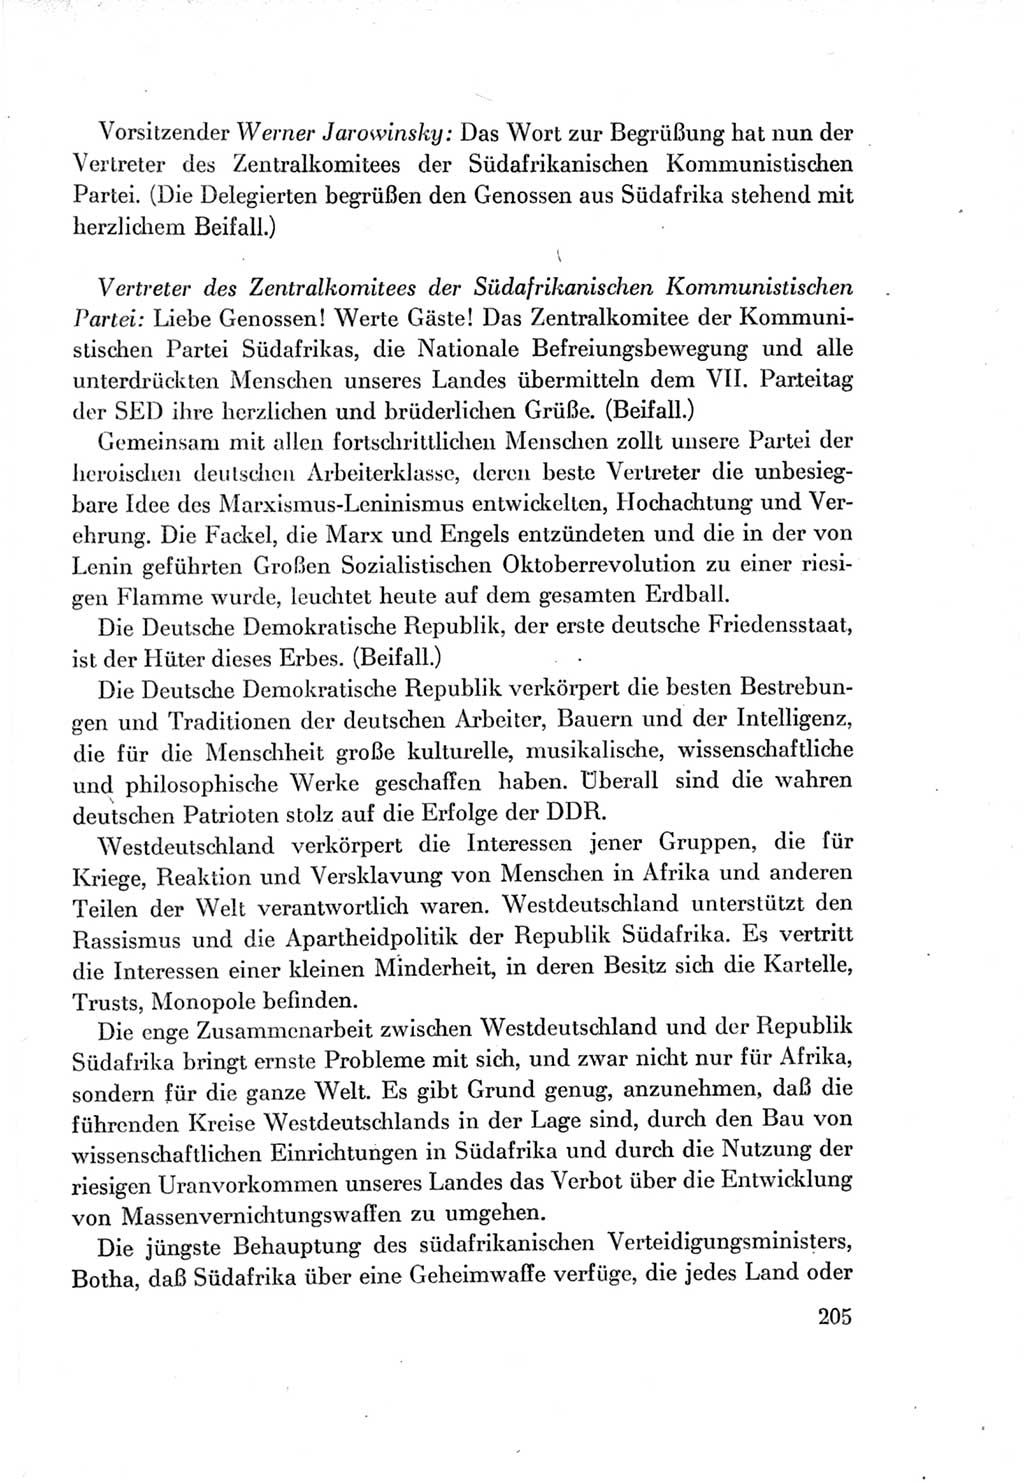 Protokoll der Verhandlungen des Ⅶ. Parteitages der Sozialistischen Einheitspartei Deutschlands (SED) [Deutsche Demokratische Republik (DDR)] 1967, Band Ⅱ, Seite 205 (Prot. Verh. Ⅶ. PT SED DDR 1967, Bd. Ⅱ, S. 205)